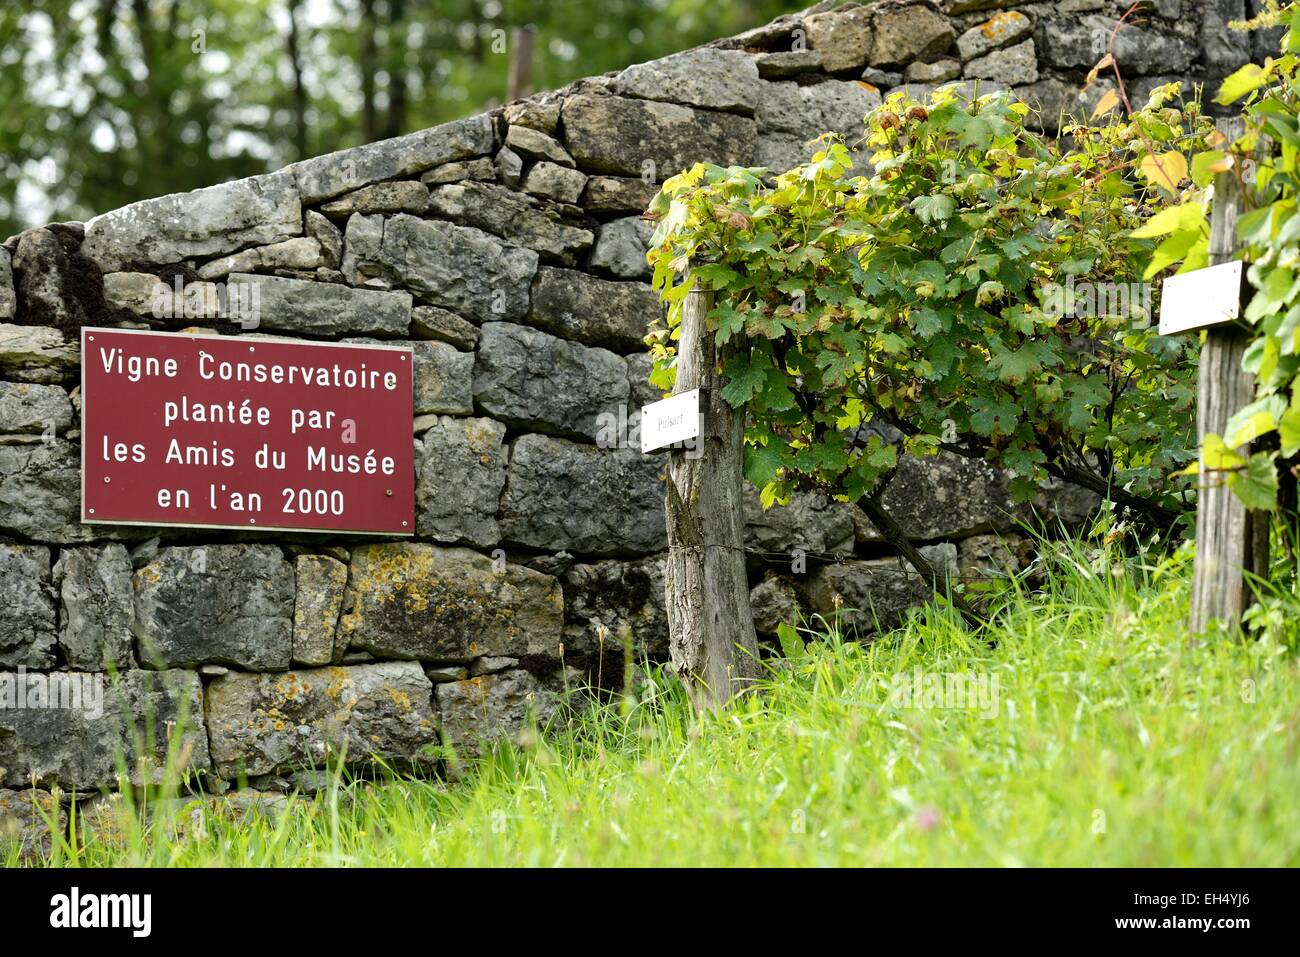 France, Doubs, Lods, labelled Les Plus Beaux Villages de France (The Most beautiful Villages of France), Conservatory Vine Stock Photo